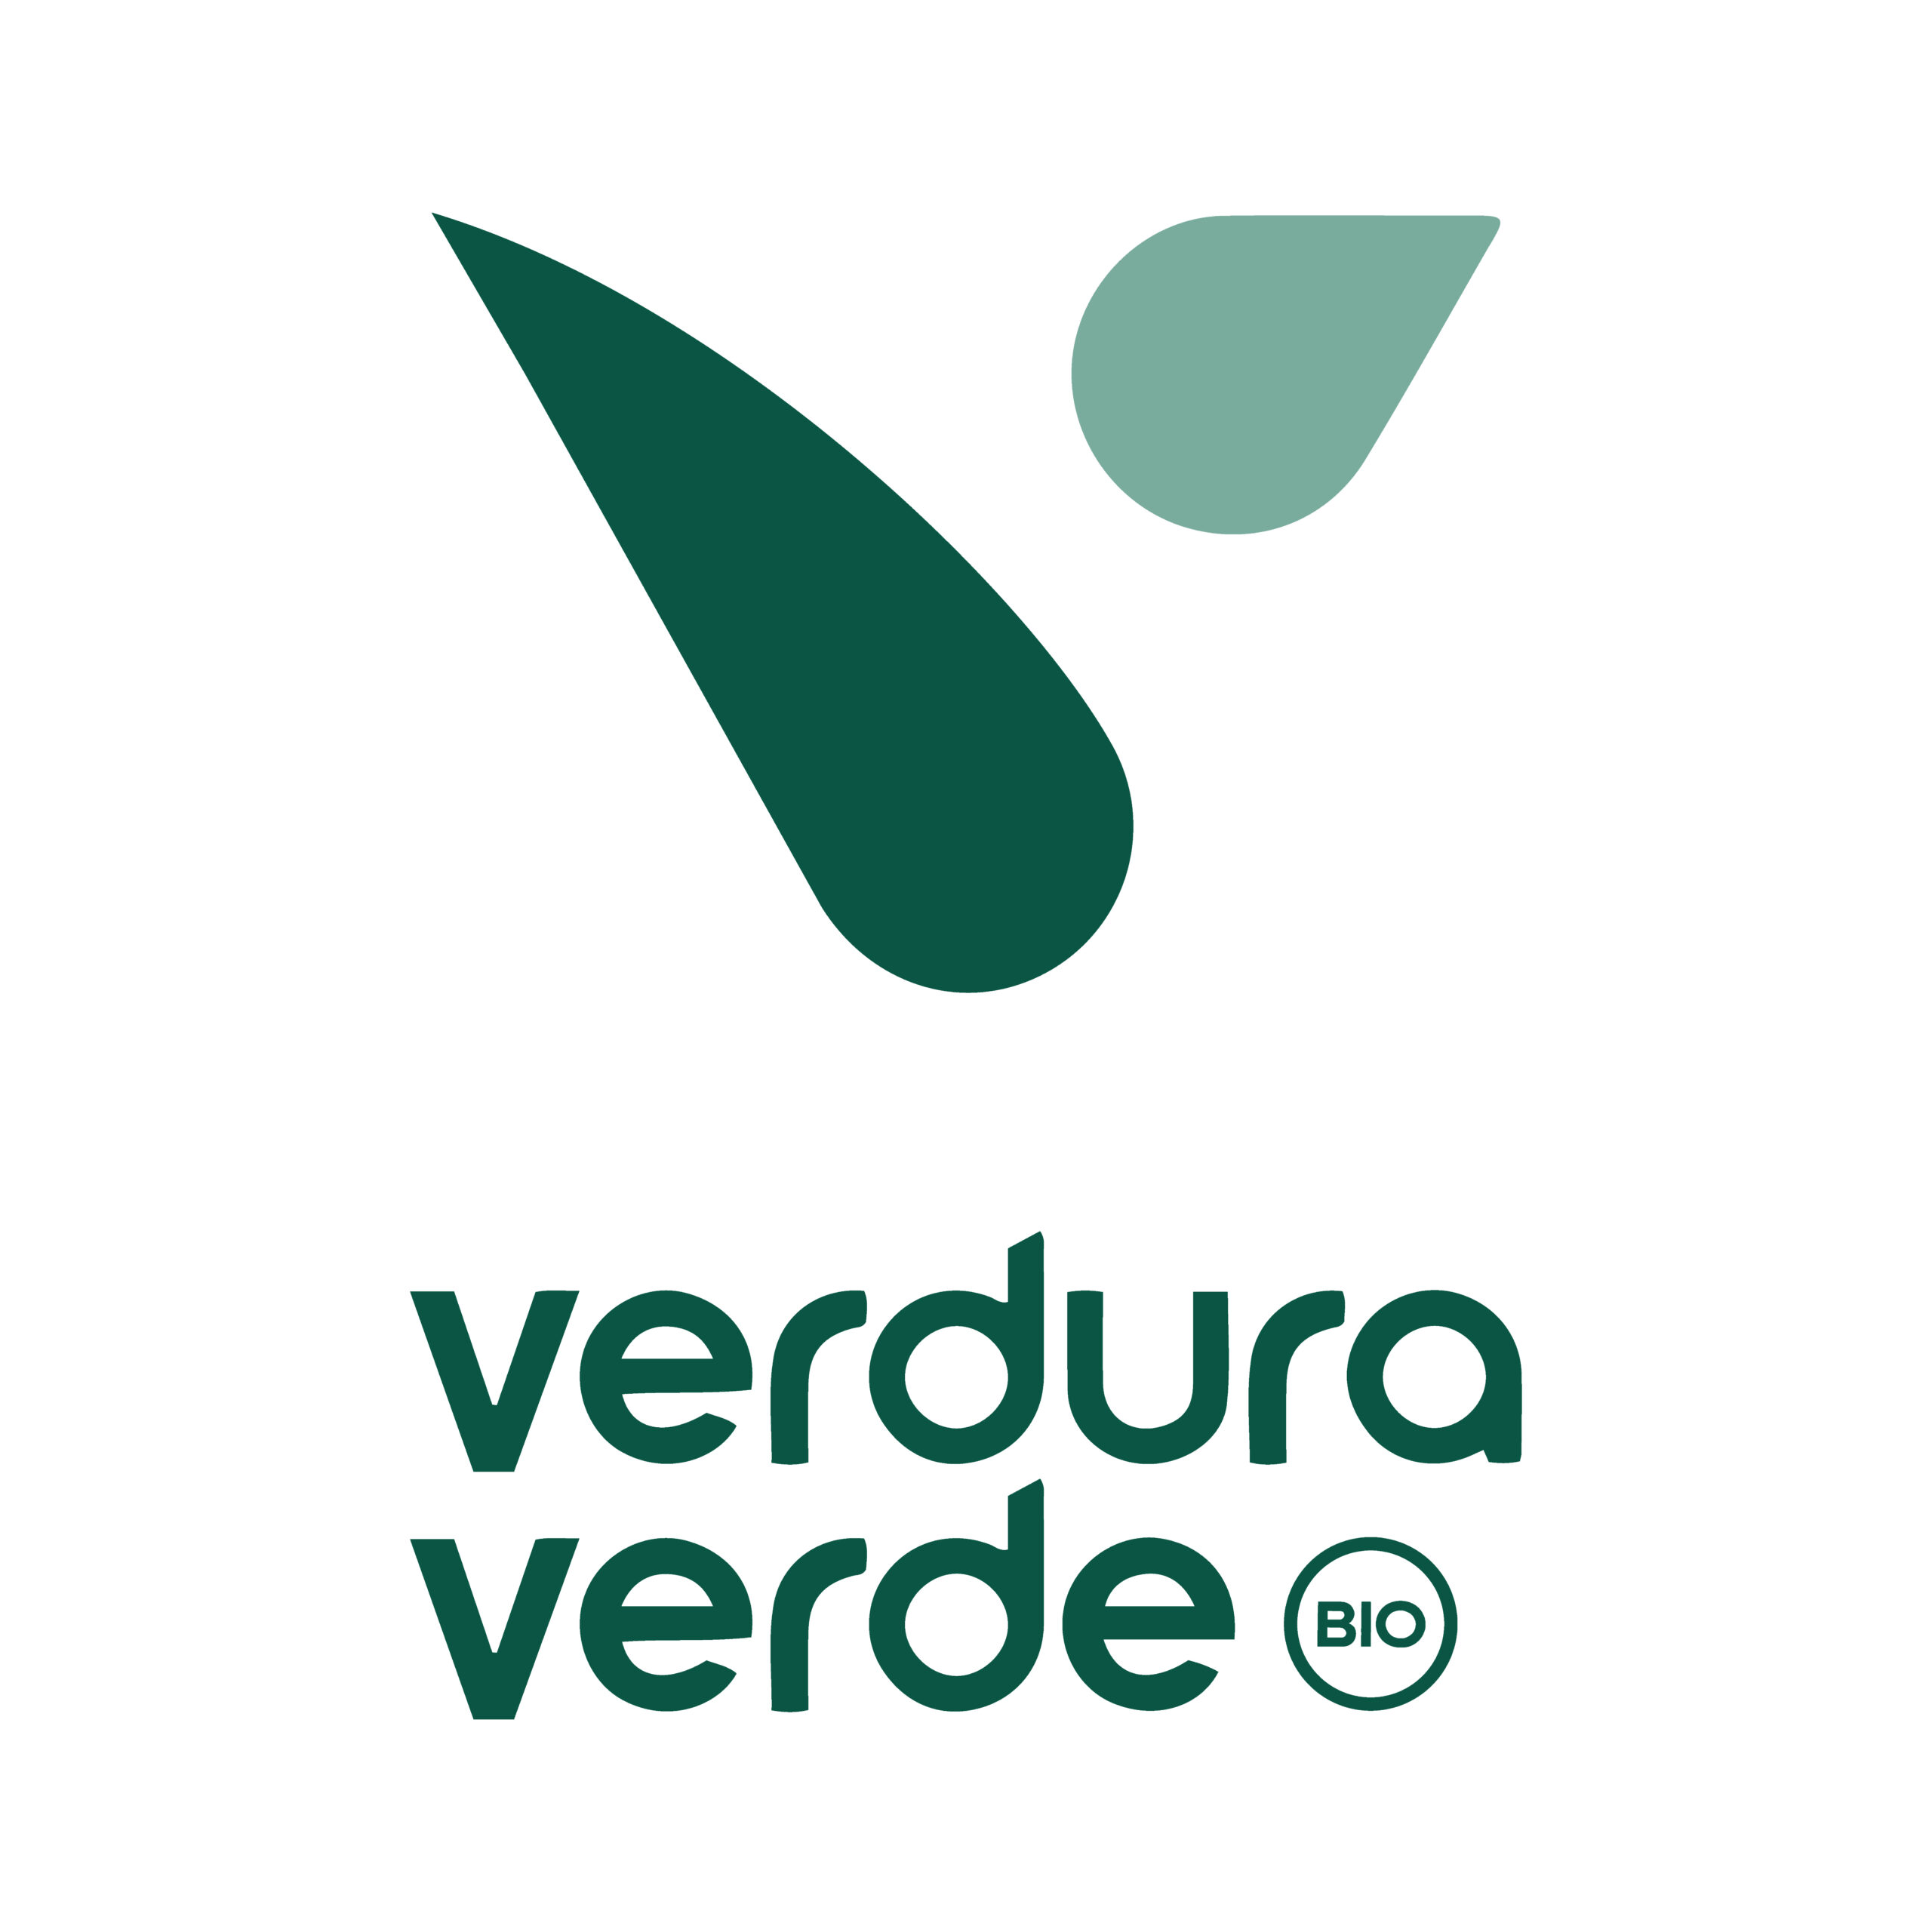 Verdura Verde_full logo